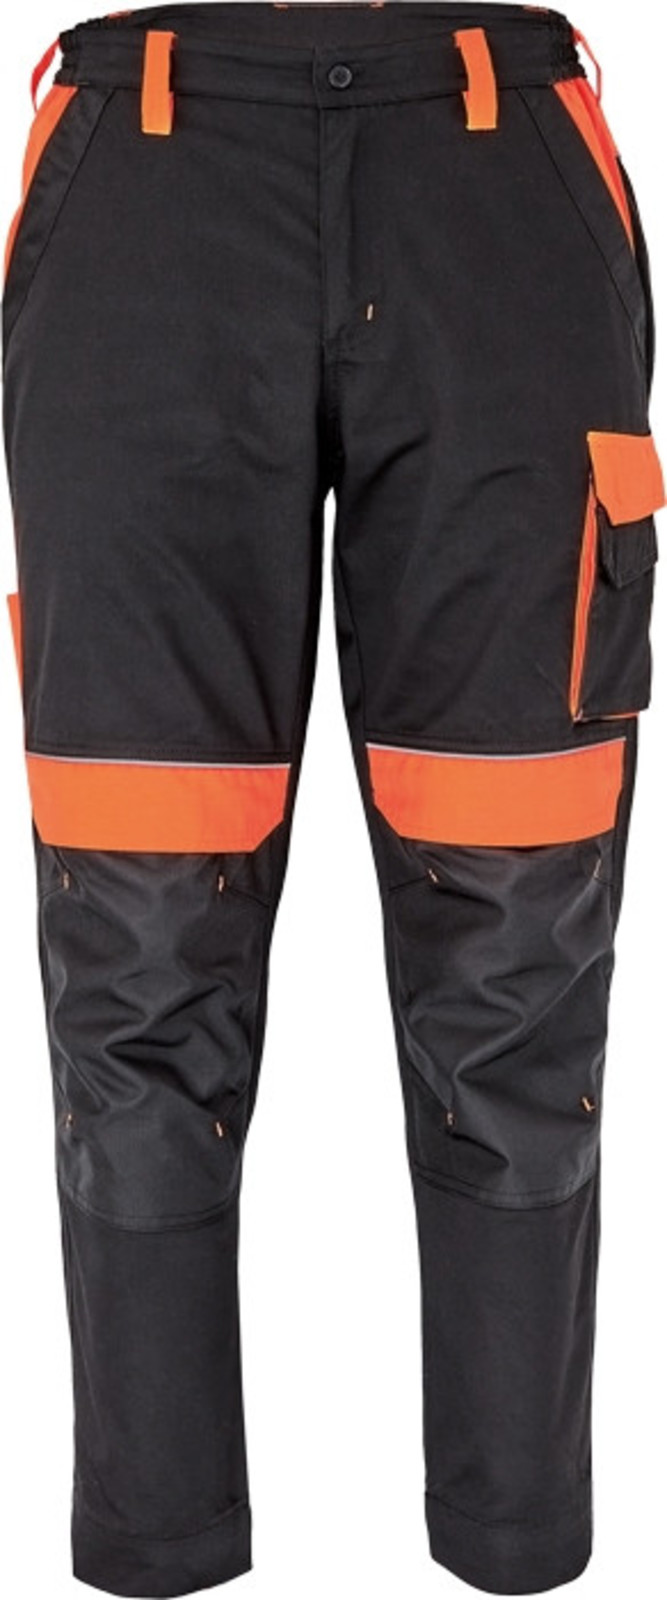 Pracovné nohavice Cerva Max Vivo pánske  - veľkosť: 66, farba: čierna/oranžová